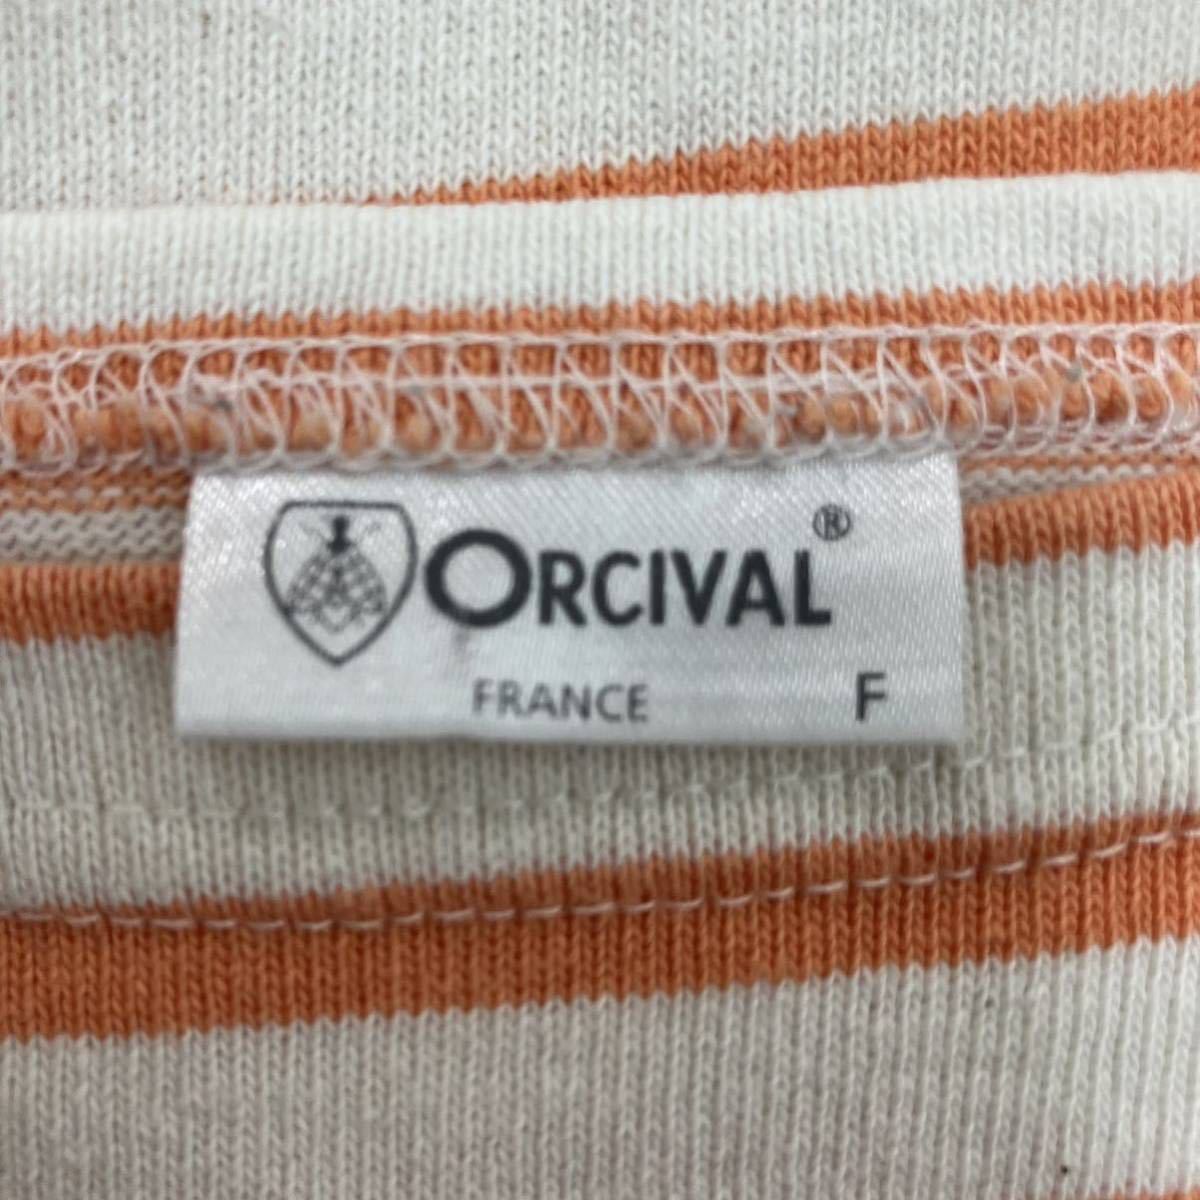 ORCIVAL オーシバル レディース ボーダーTシャツ 半袖 ボーダー柄 ストライプ柄 ボーダーカットソー コットン オレンジ 丸首 フリーサイズ